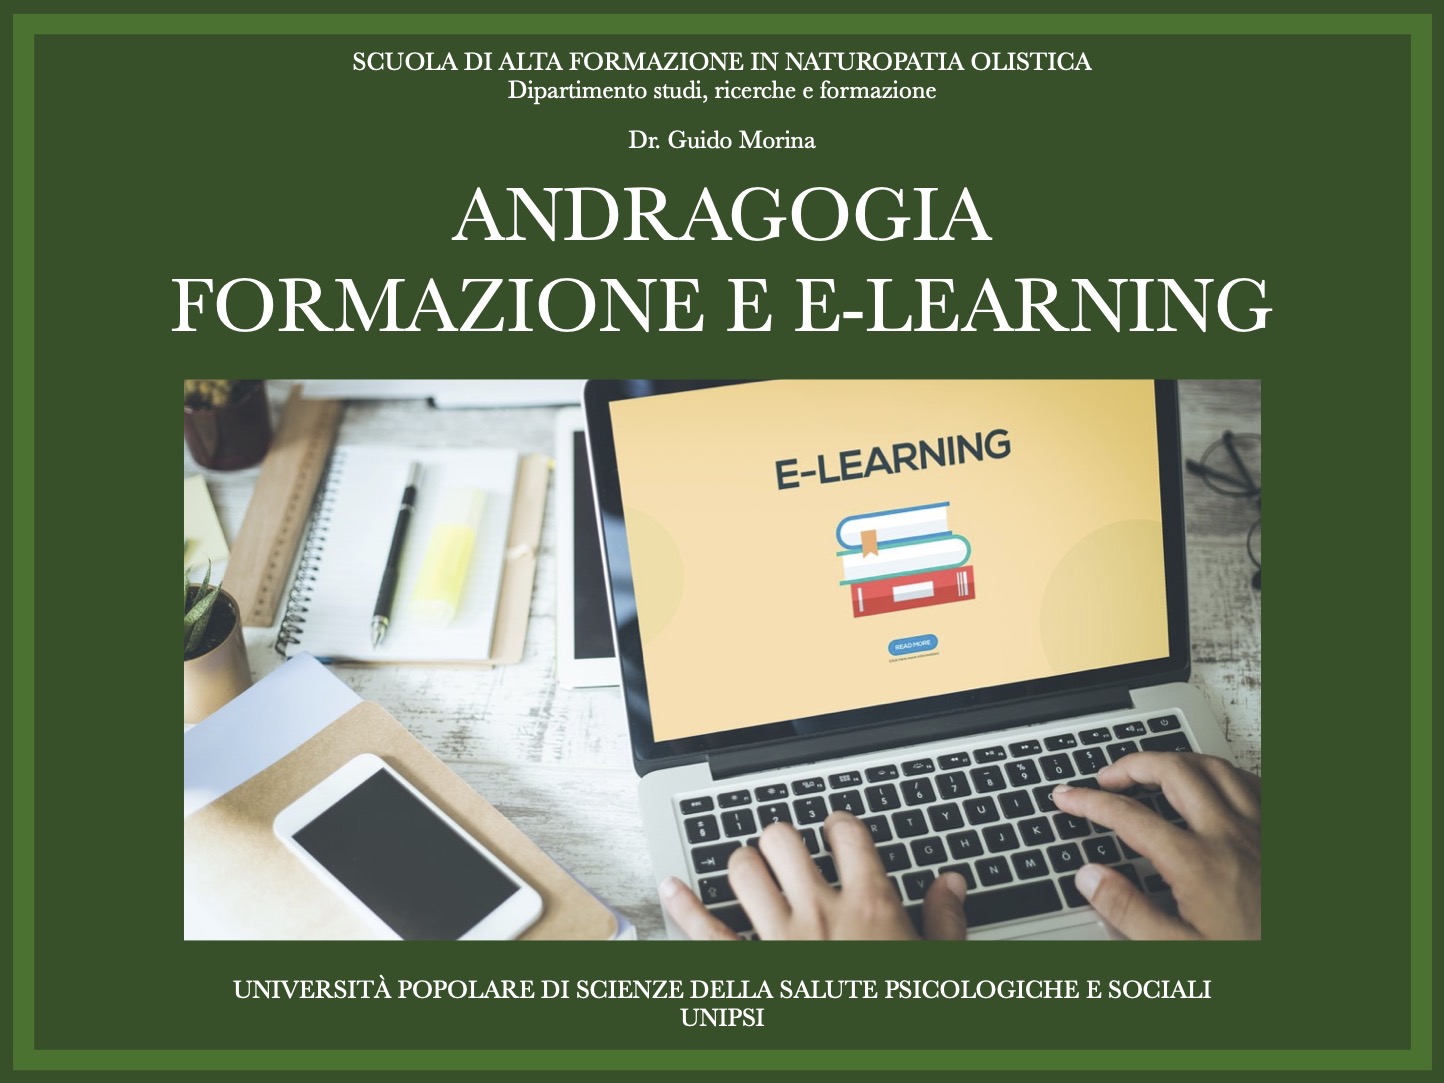 E-LEARNING E ANDRAGOGIA